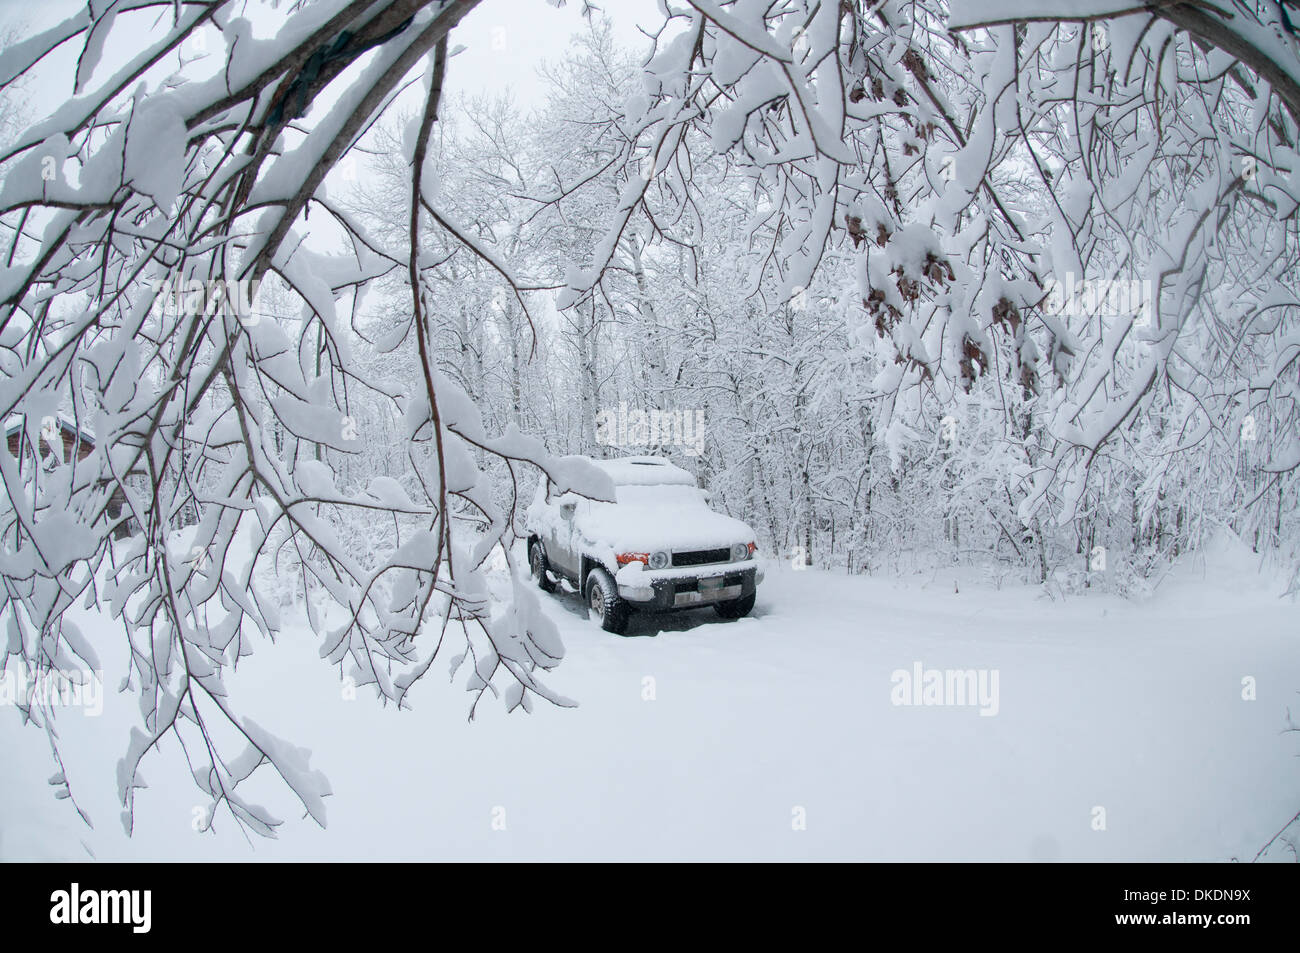 Eine schneebedeckte Auto sitzt unter einem Baldachin von stark verschneiten Bäumen nach einem Schneesturm Stockfoto